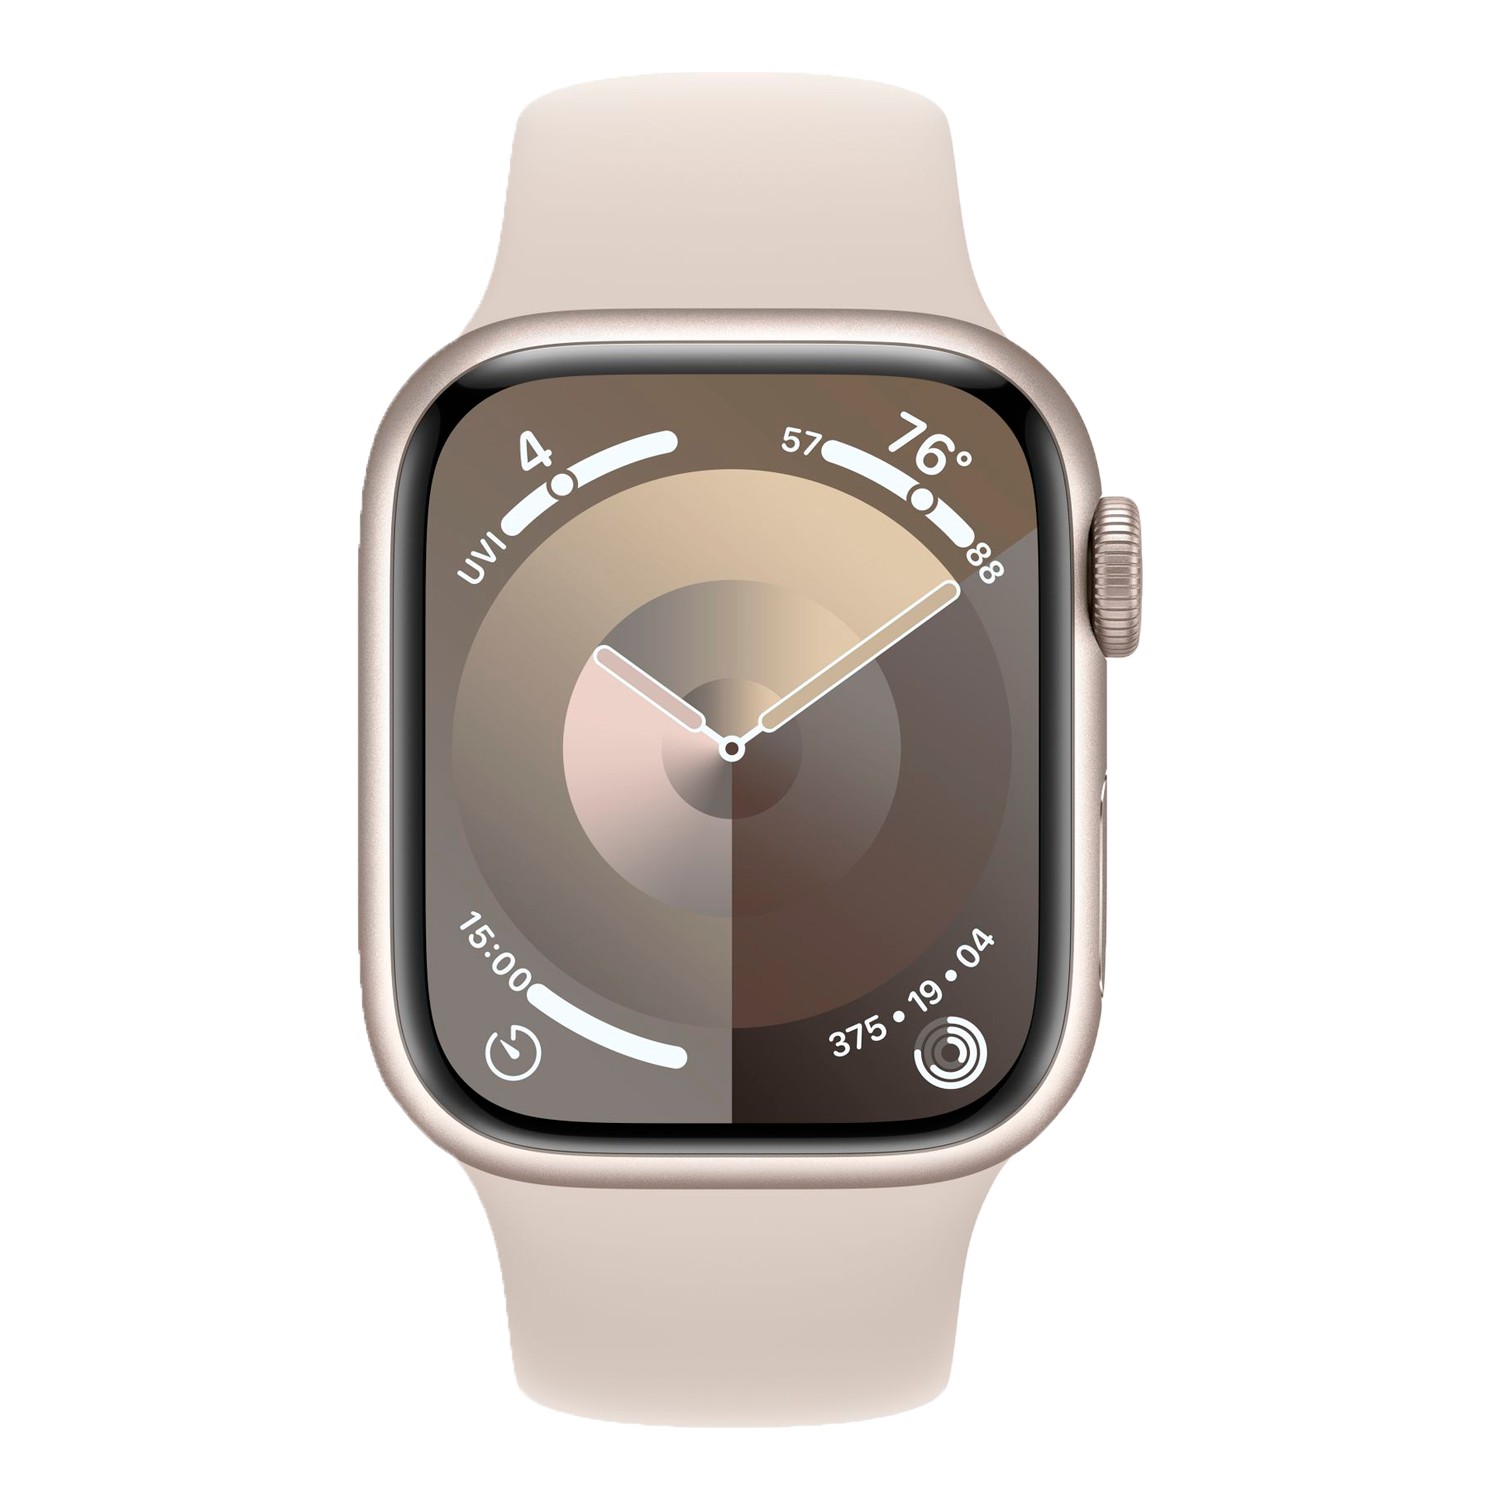 Relogio Apple Watch Series 3 GPS 38mm Caixa de Aluminio com